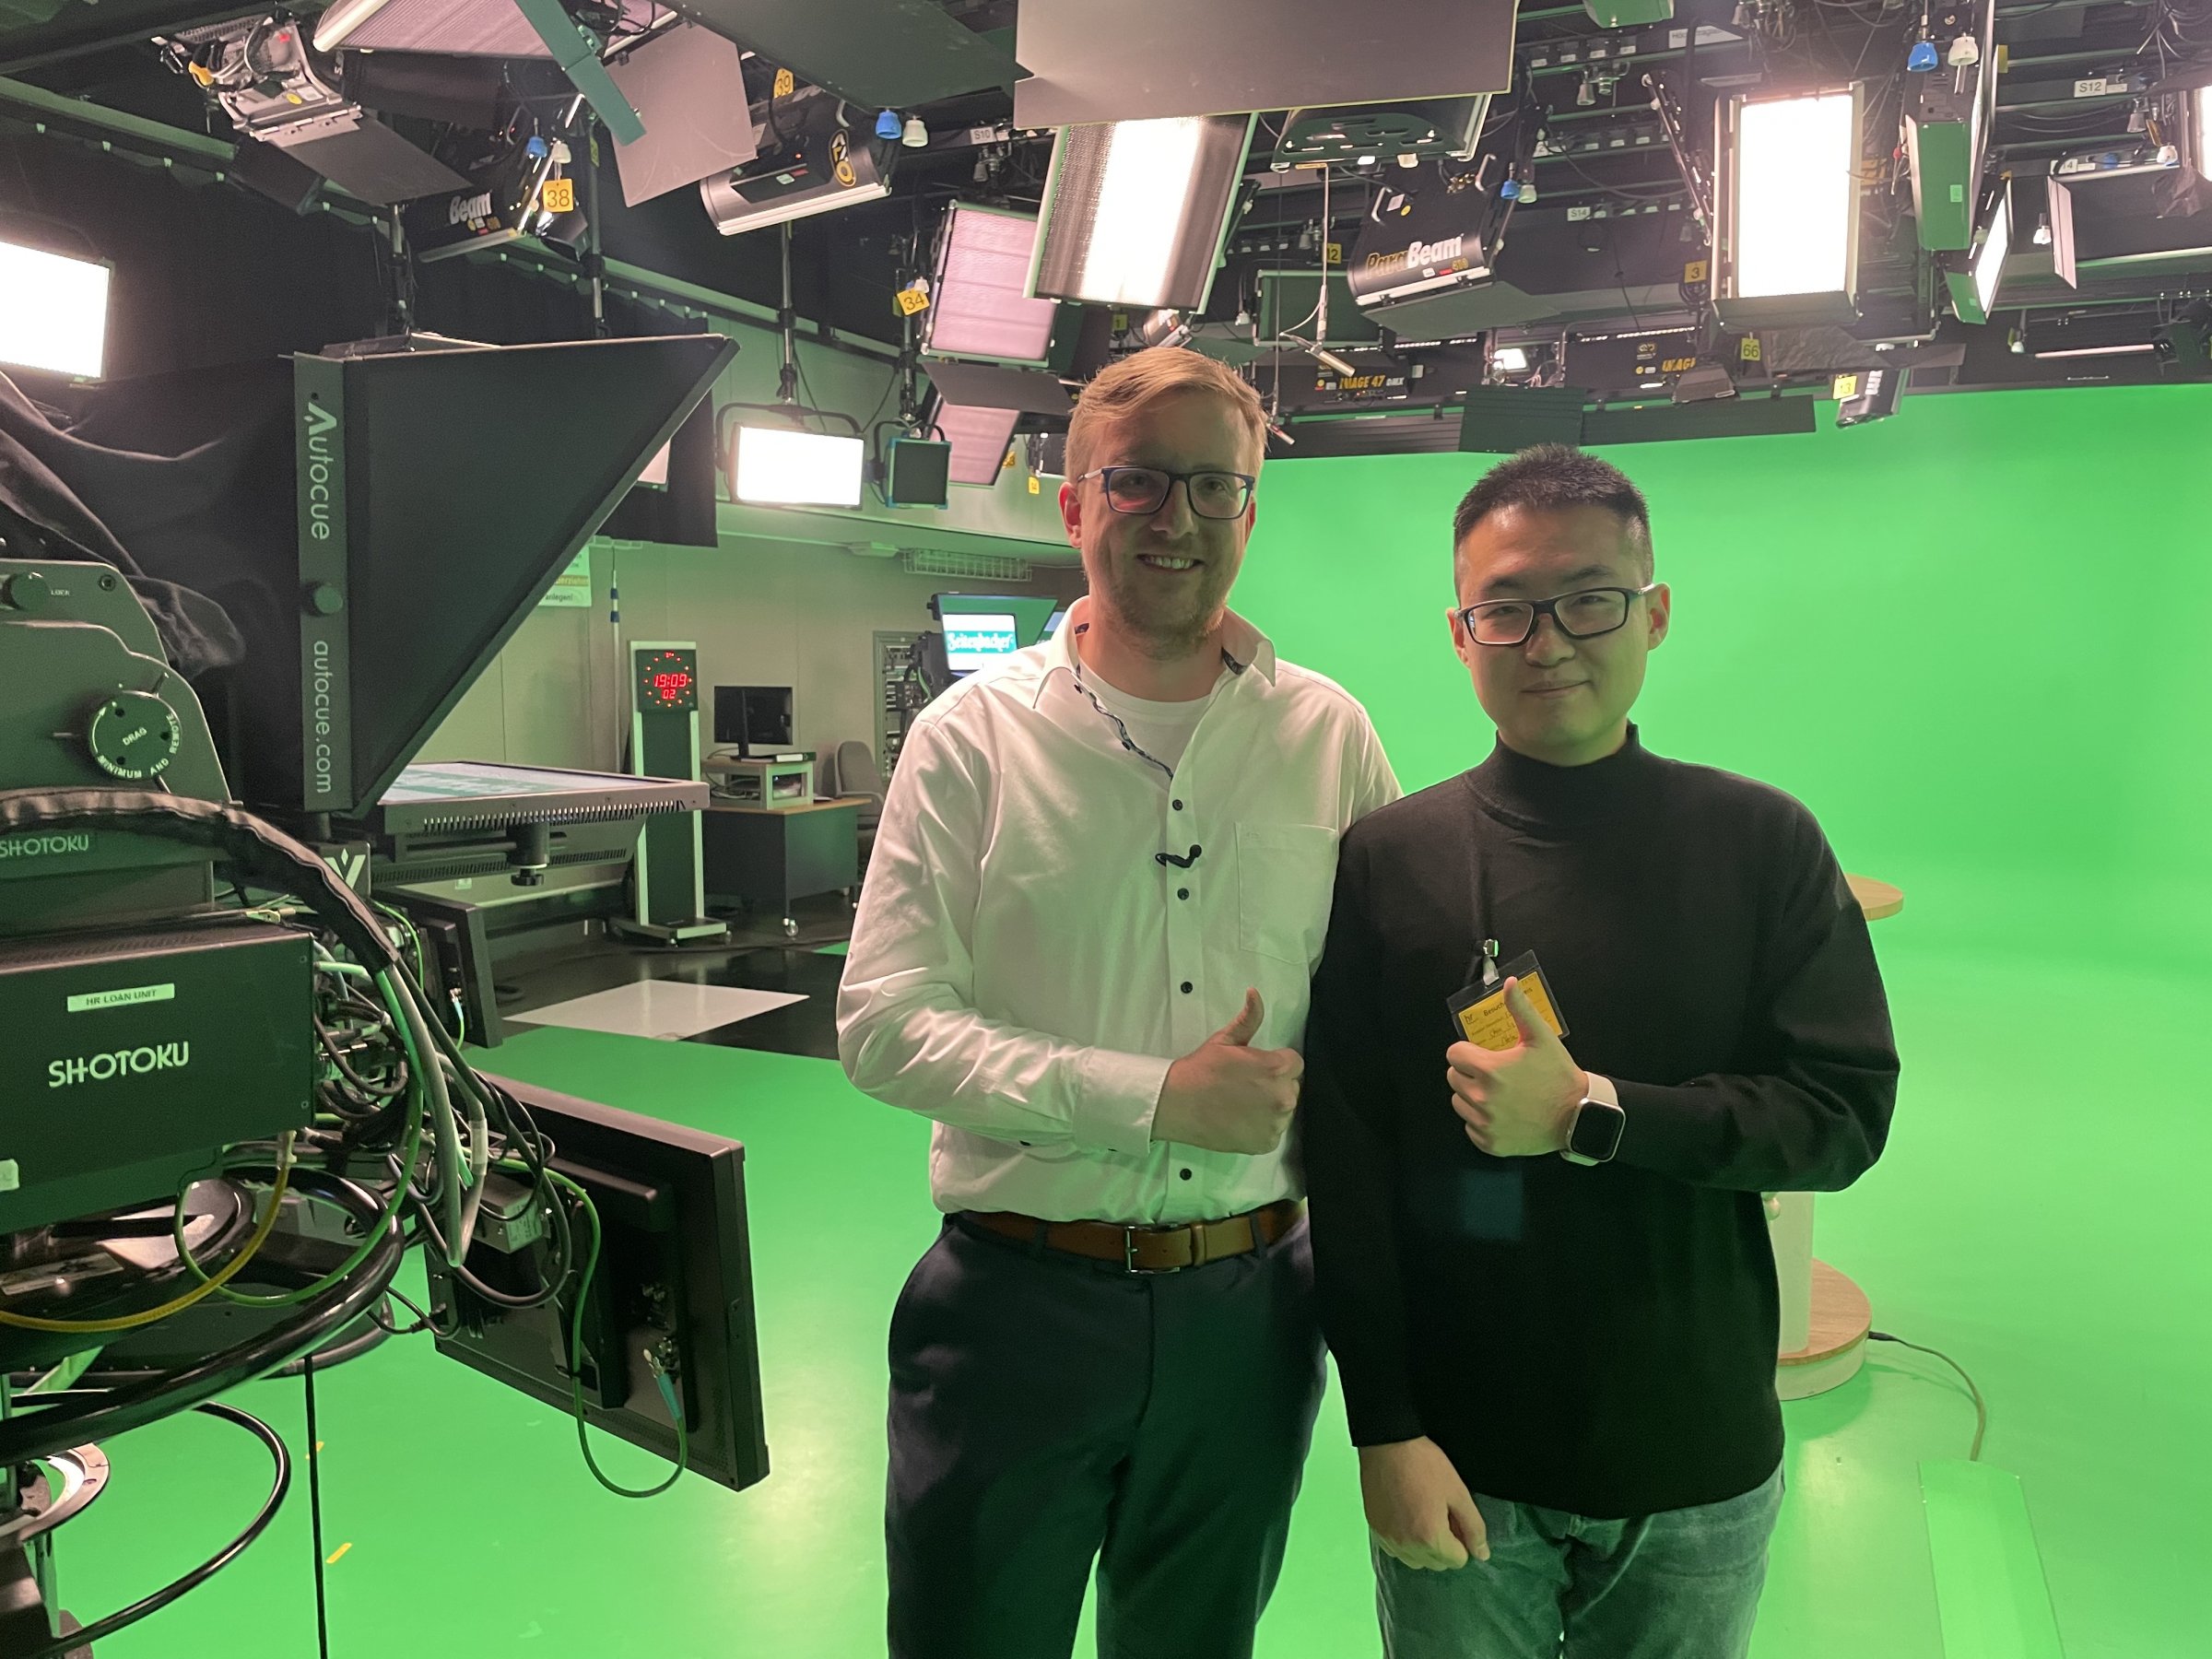 Markus Schlott and Chen Li in HR TV studio